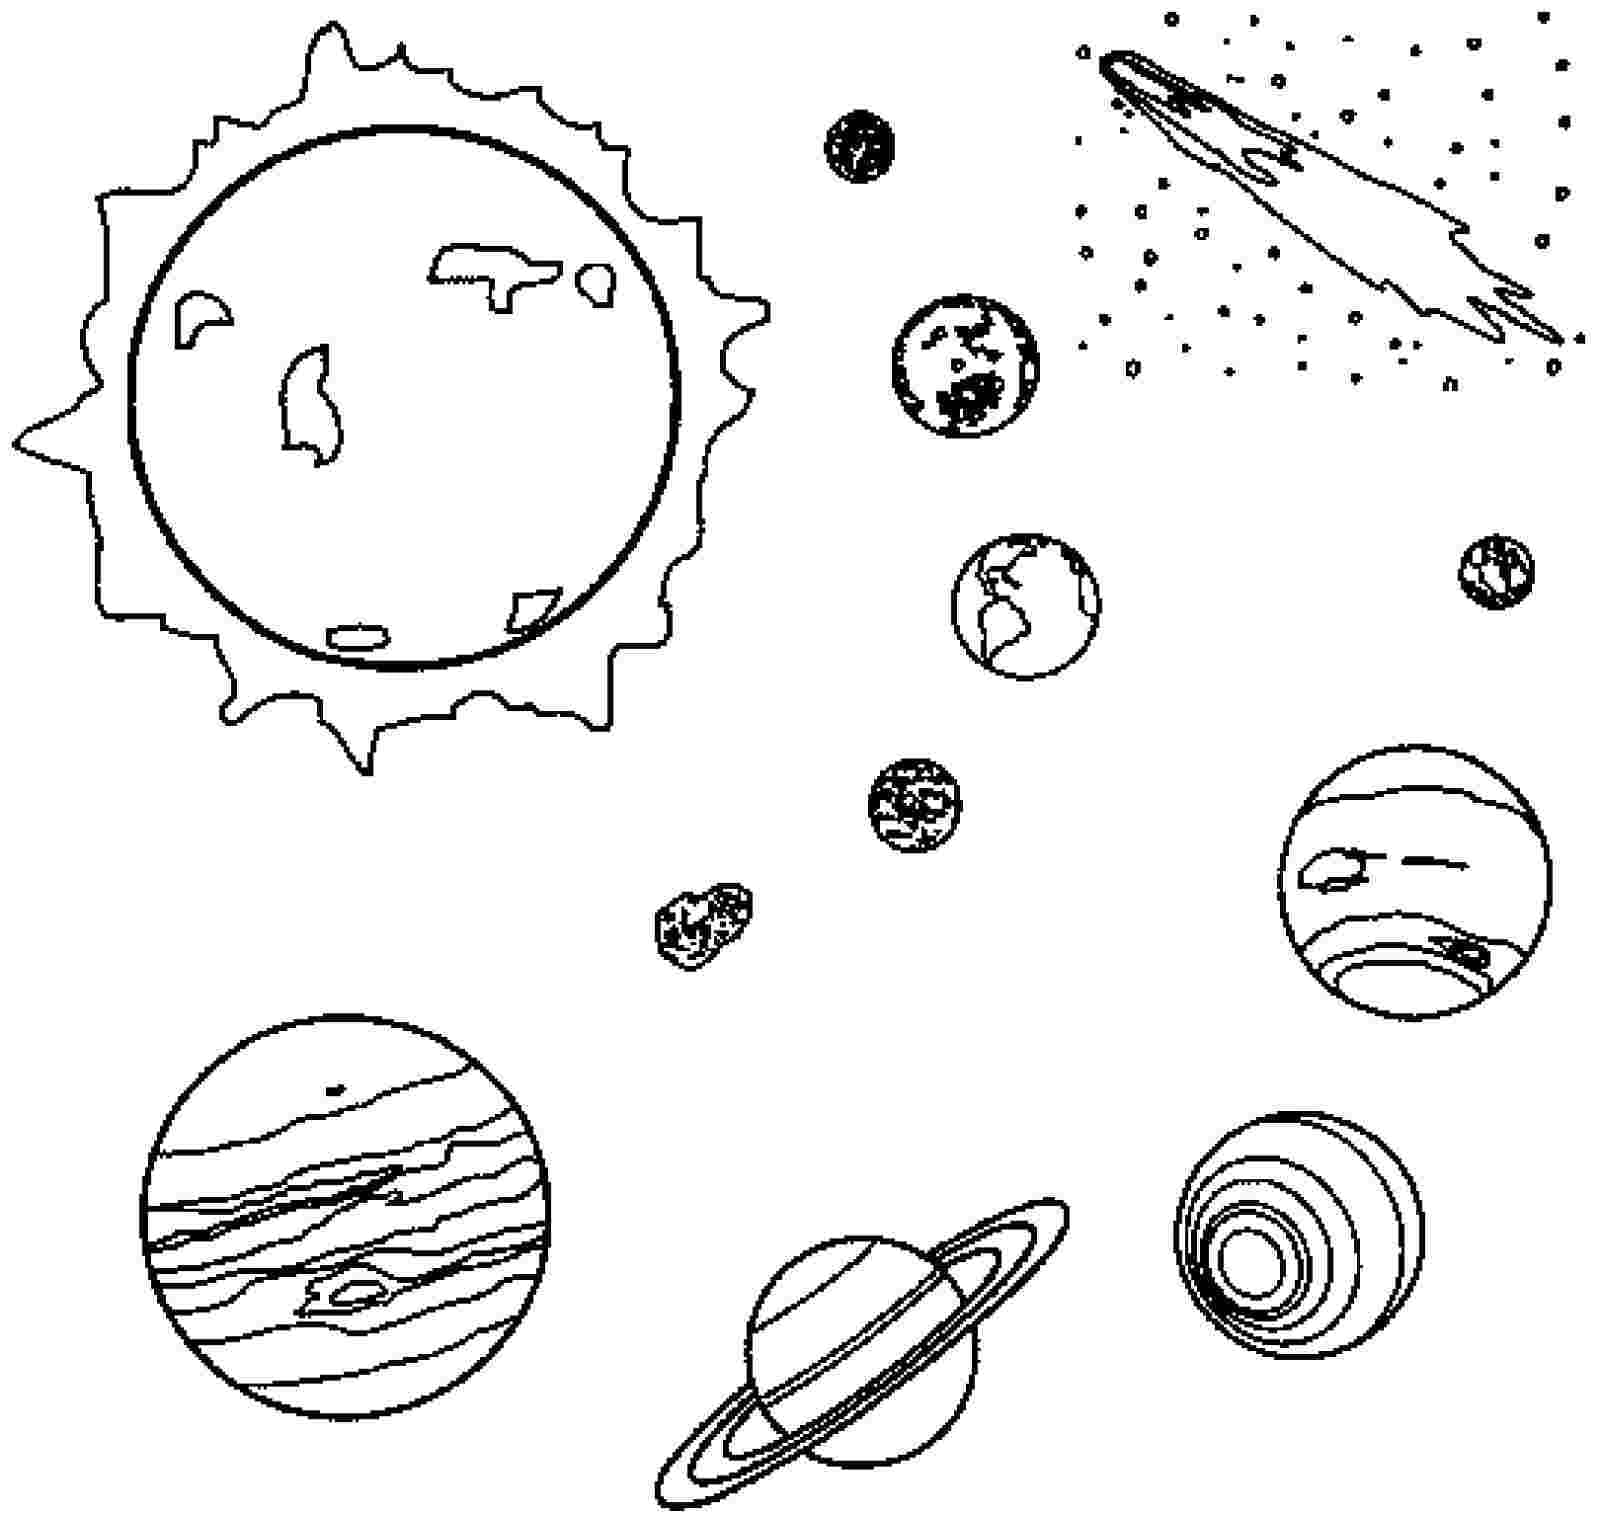 Планеты картинки для детей раскраски. Планеты солнечной системы раскраска Марс. Раскраска планеты солнечной системы для детей. Раскраска. В космосе. Космос картинки для детей раскраски.